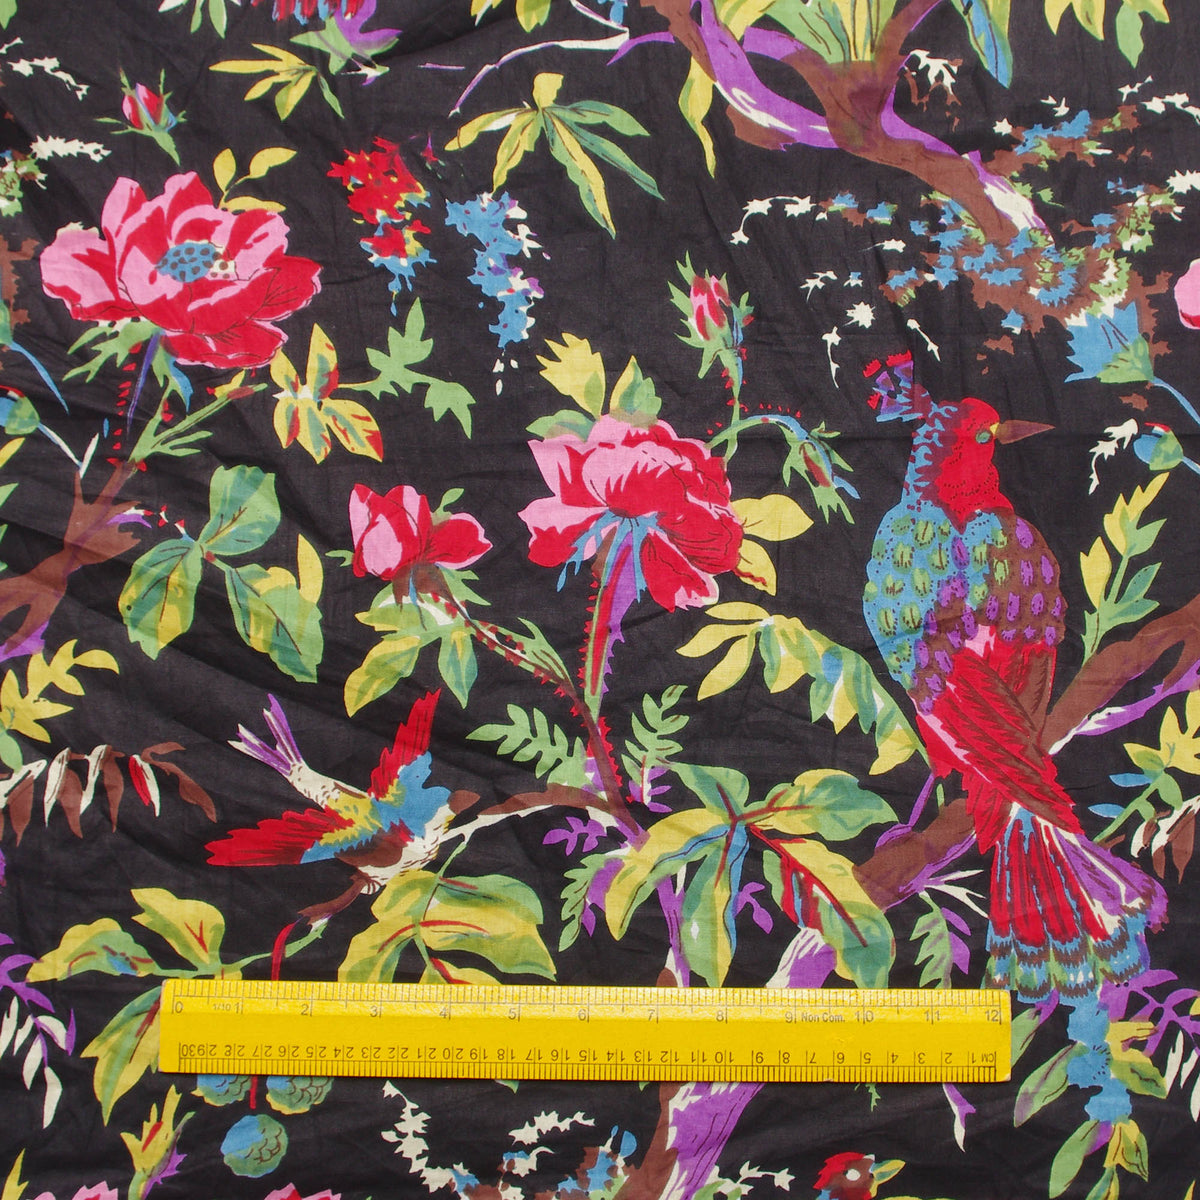 Handsiebdruck mit schwarzen tropischen Vögeln, 100 % Baumwolle, Damenkleid, Stoff, Design 254